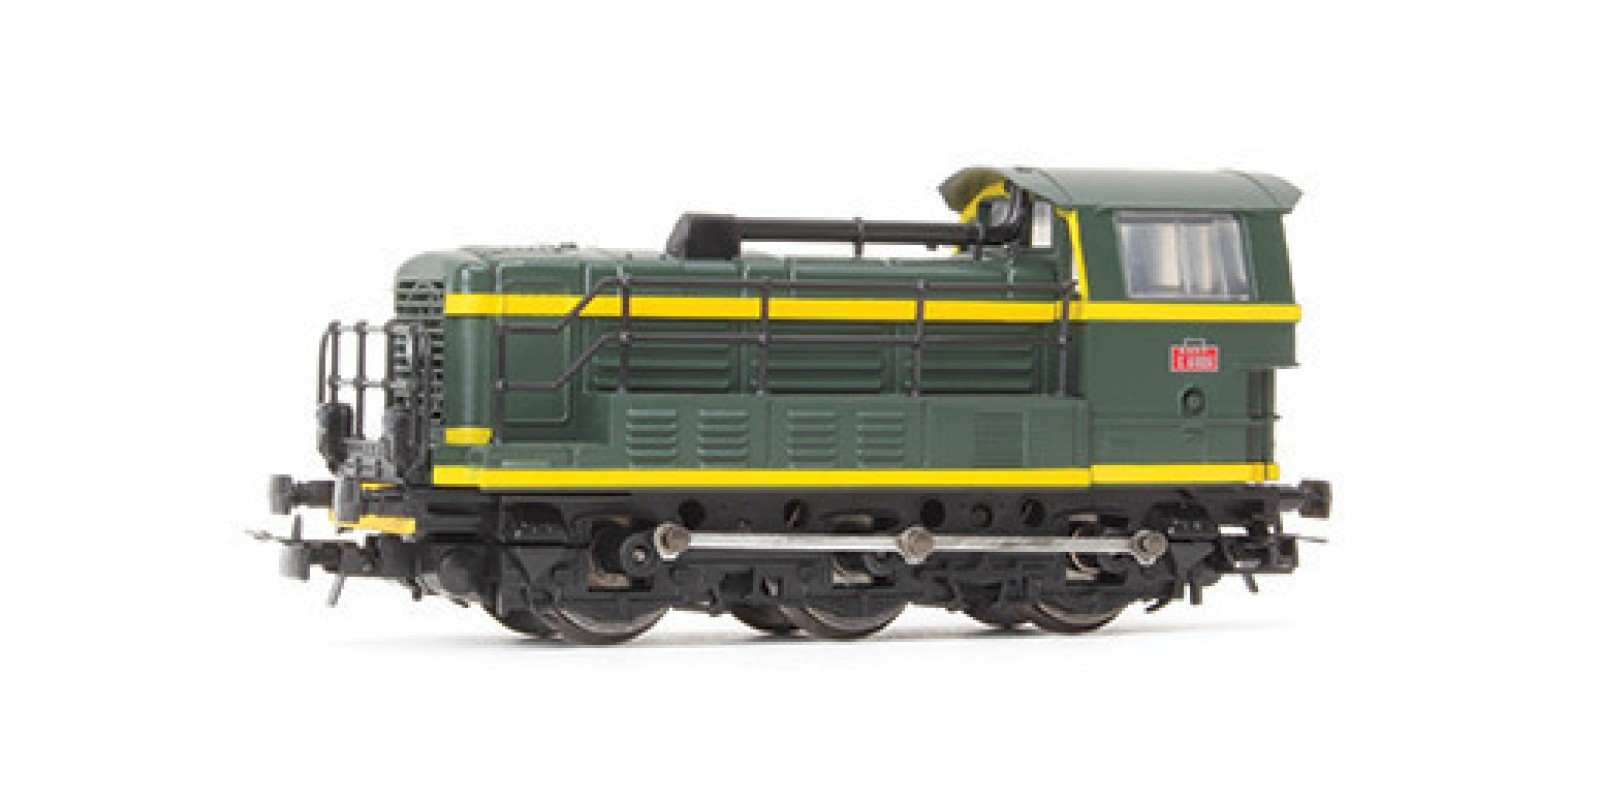 LI2311 Locomotive CC61004